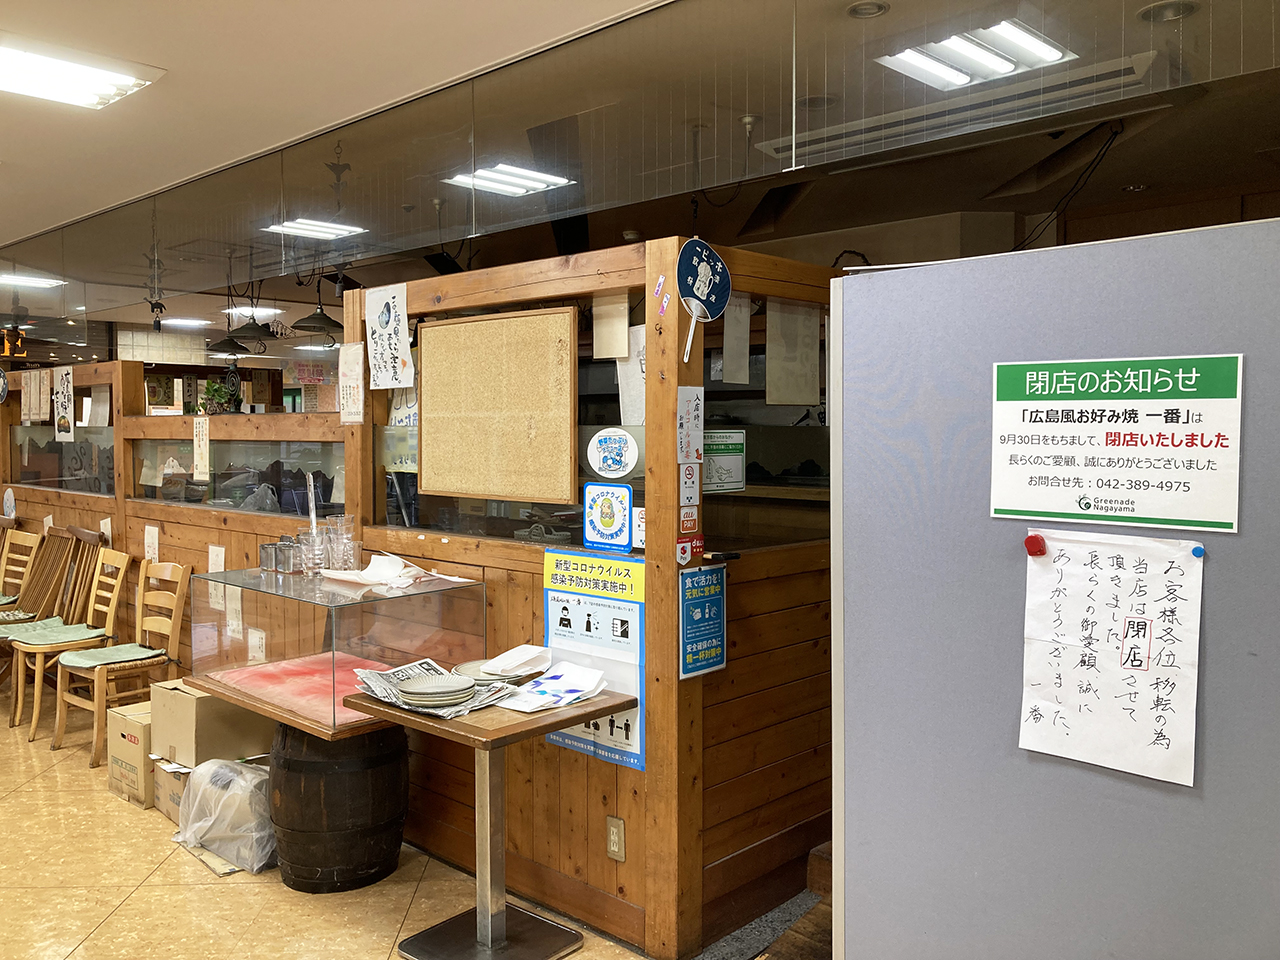 グリナード永山の4階 広島風お好み焼き「一番」が9月30日(金)をもって閉店しました